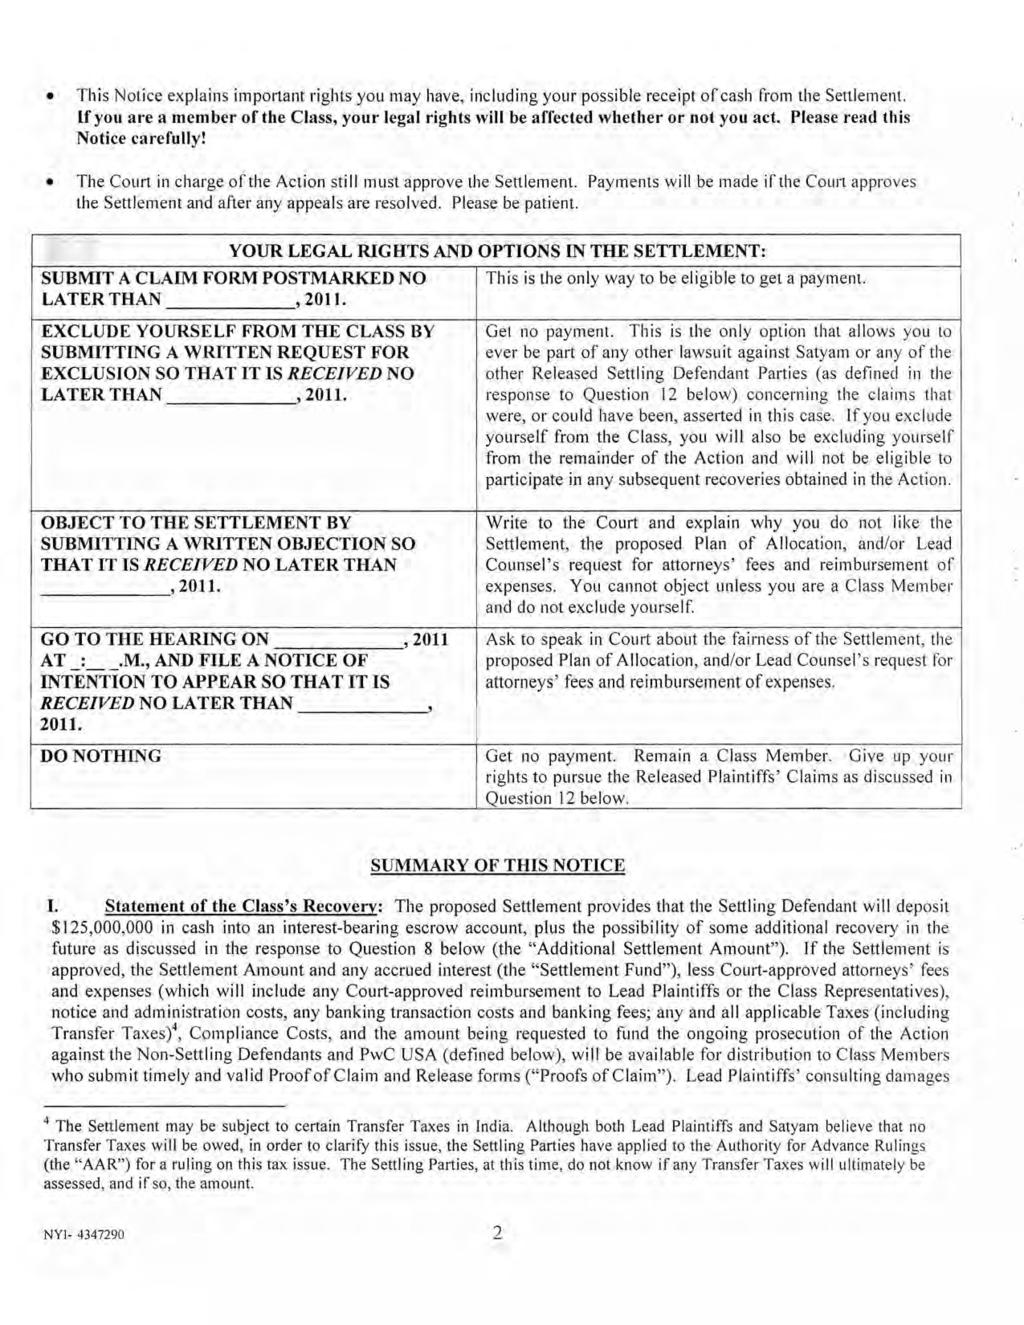 Case 1:09-md-02027-BSJ Document